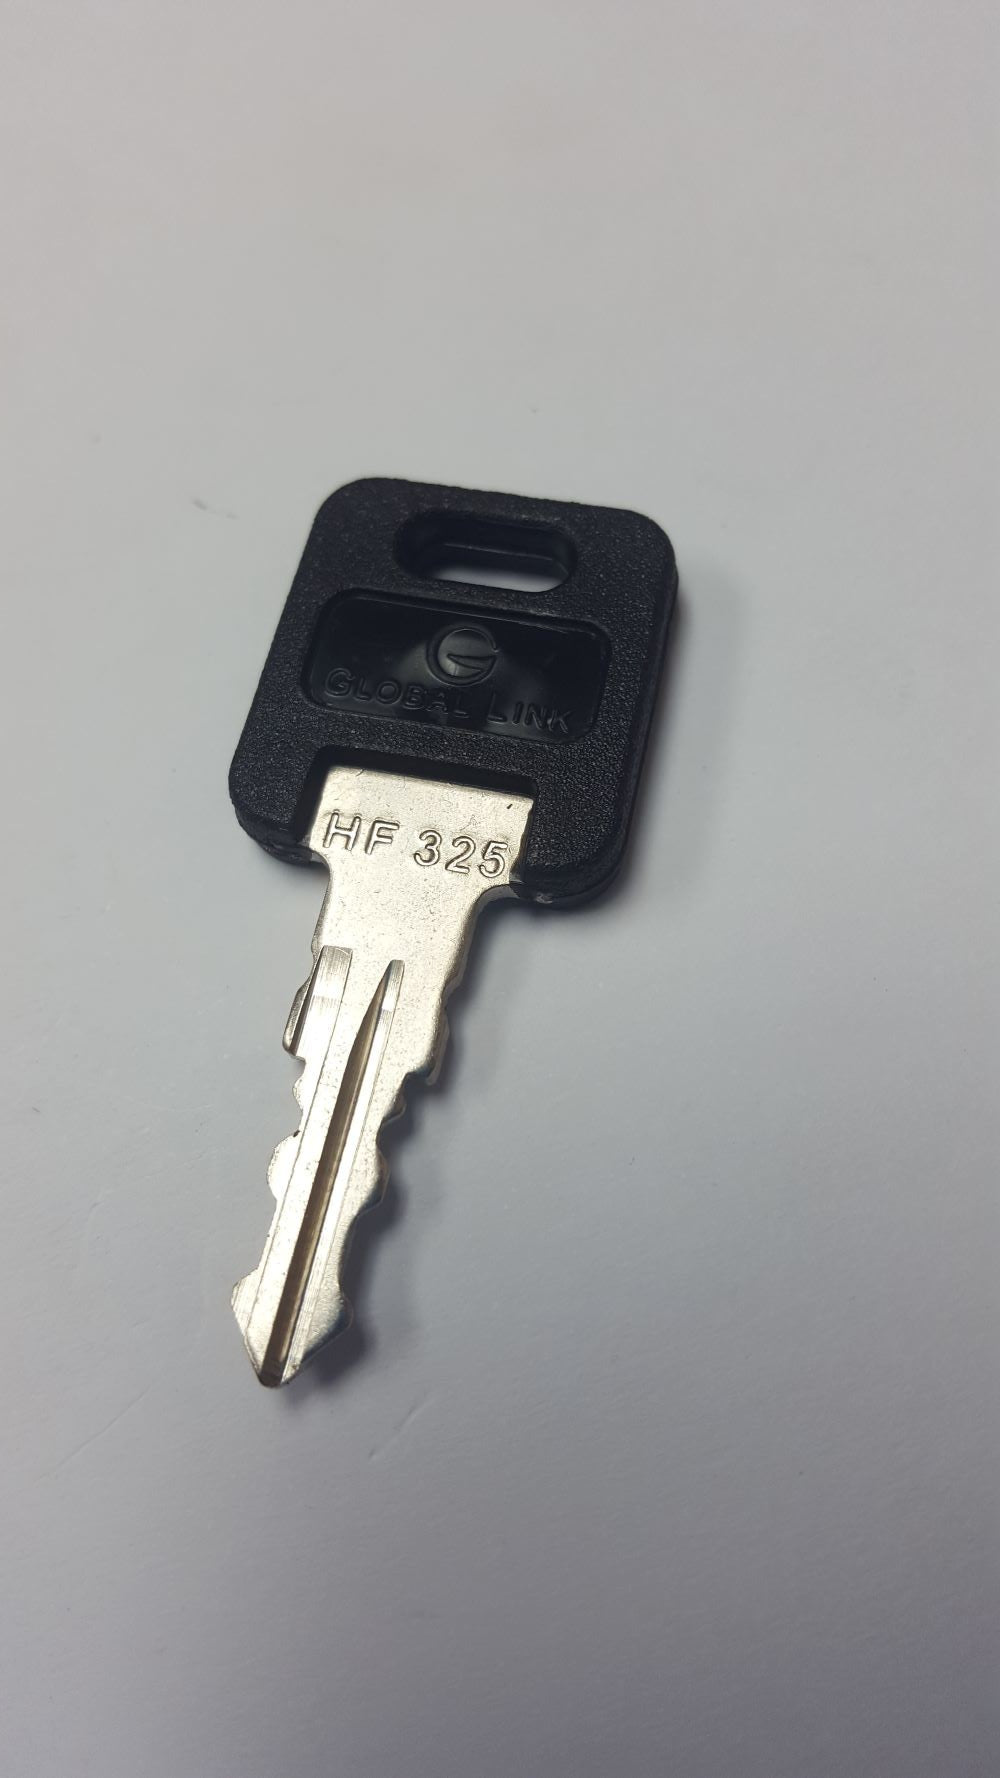 CPG KEY-HF-325 Pre-cut Stamped FIC Replacemnt HF325 Key